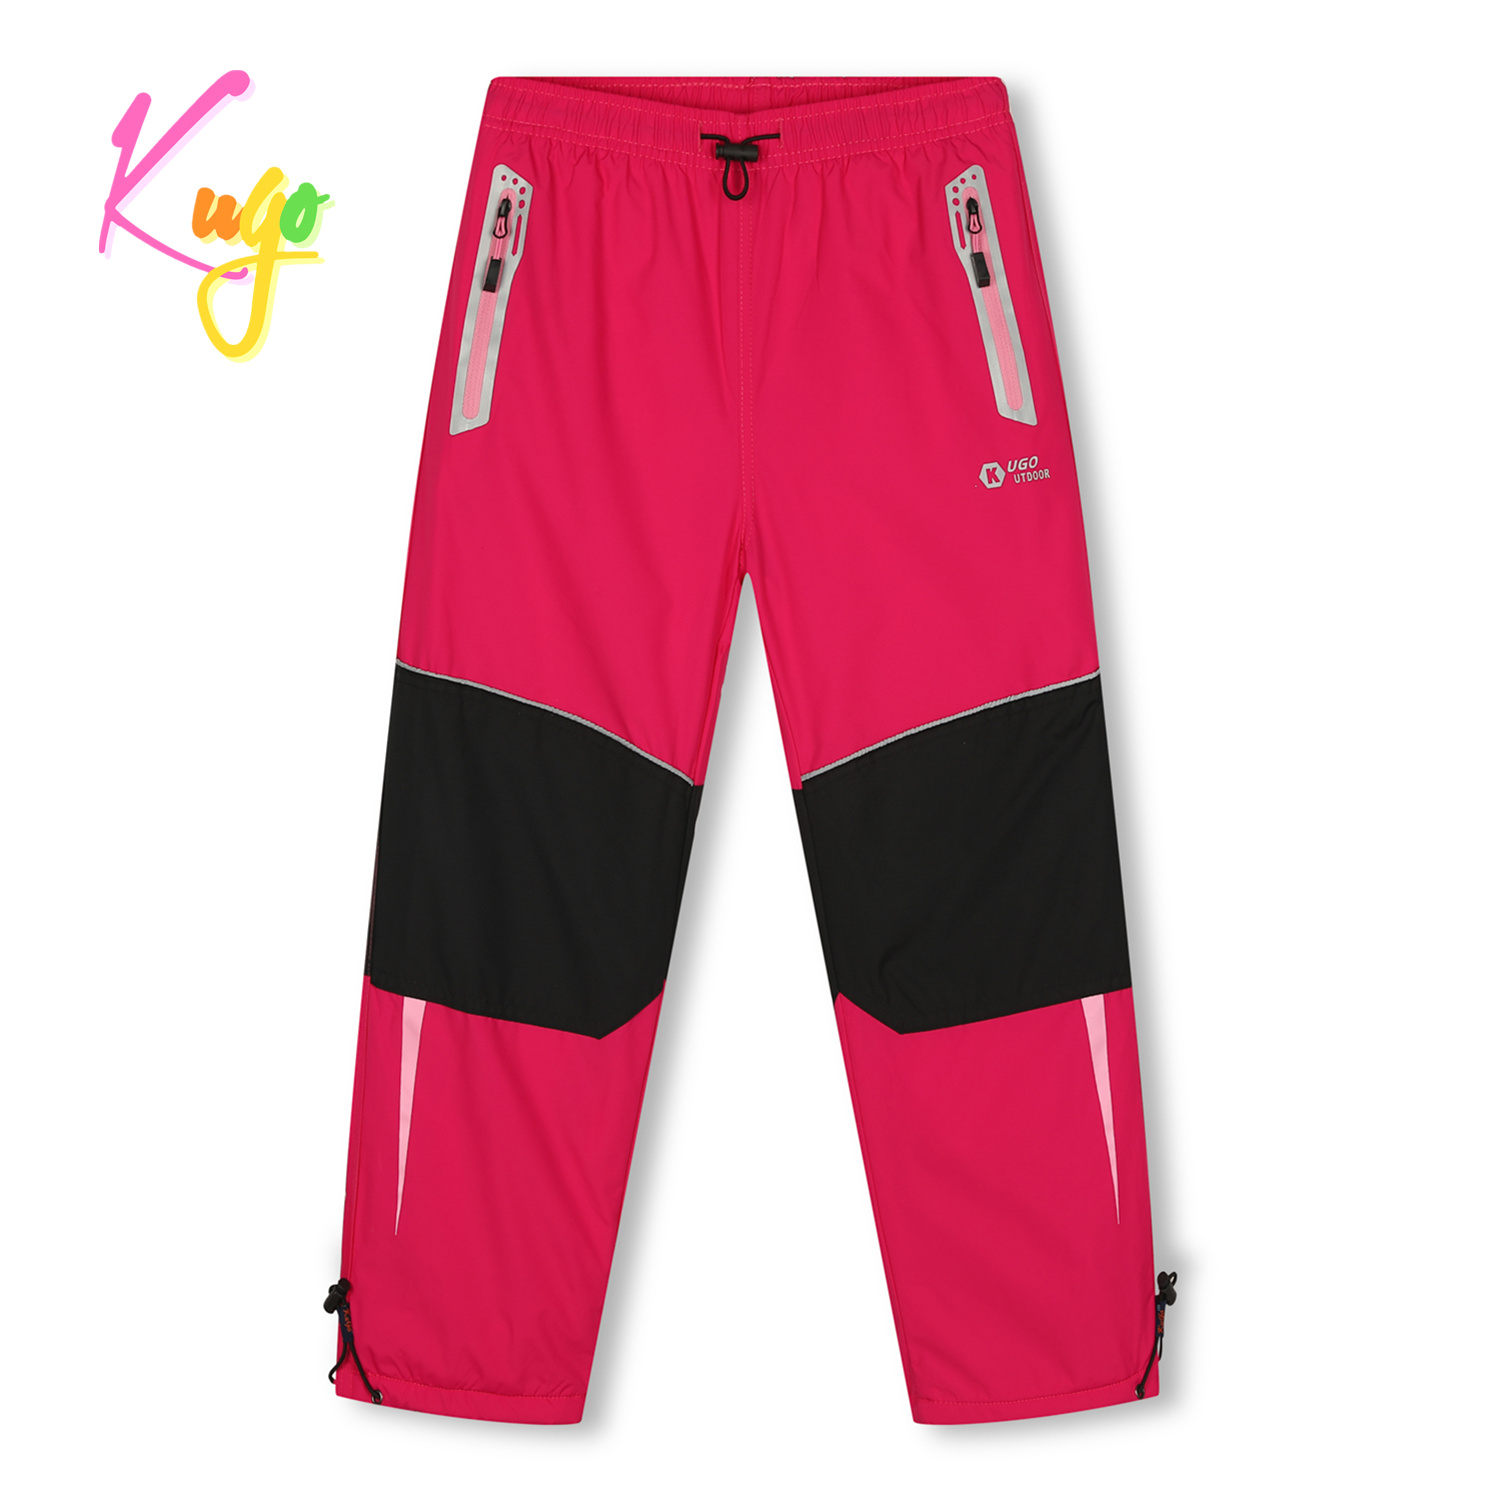 Dívčí šusťákové kalhoty, zateplené - KUGO DK7132, růžová Barva: Růžová, Velikost: 116